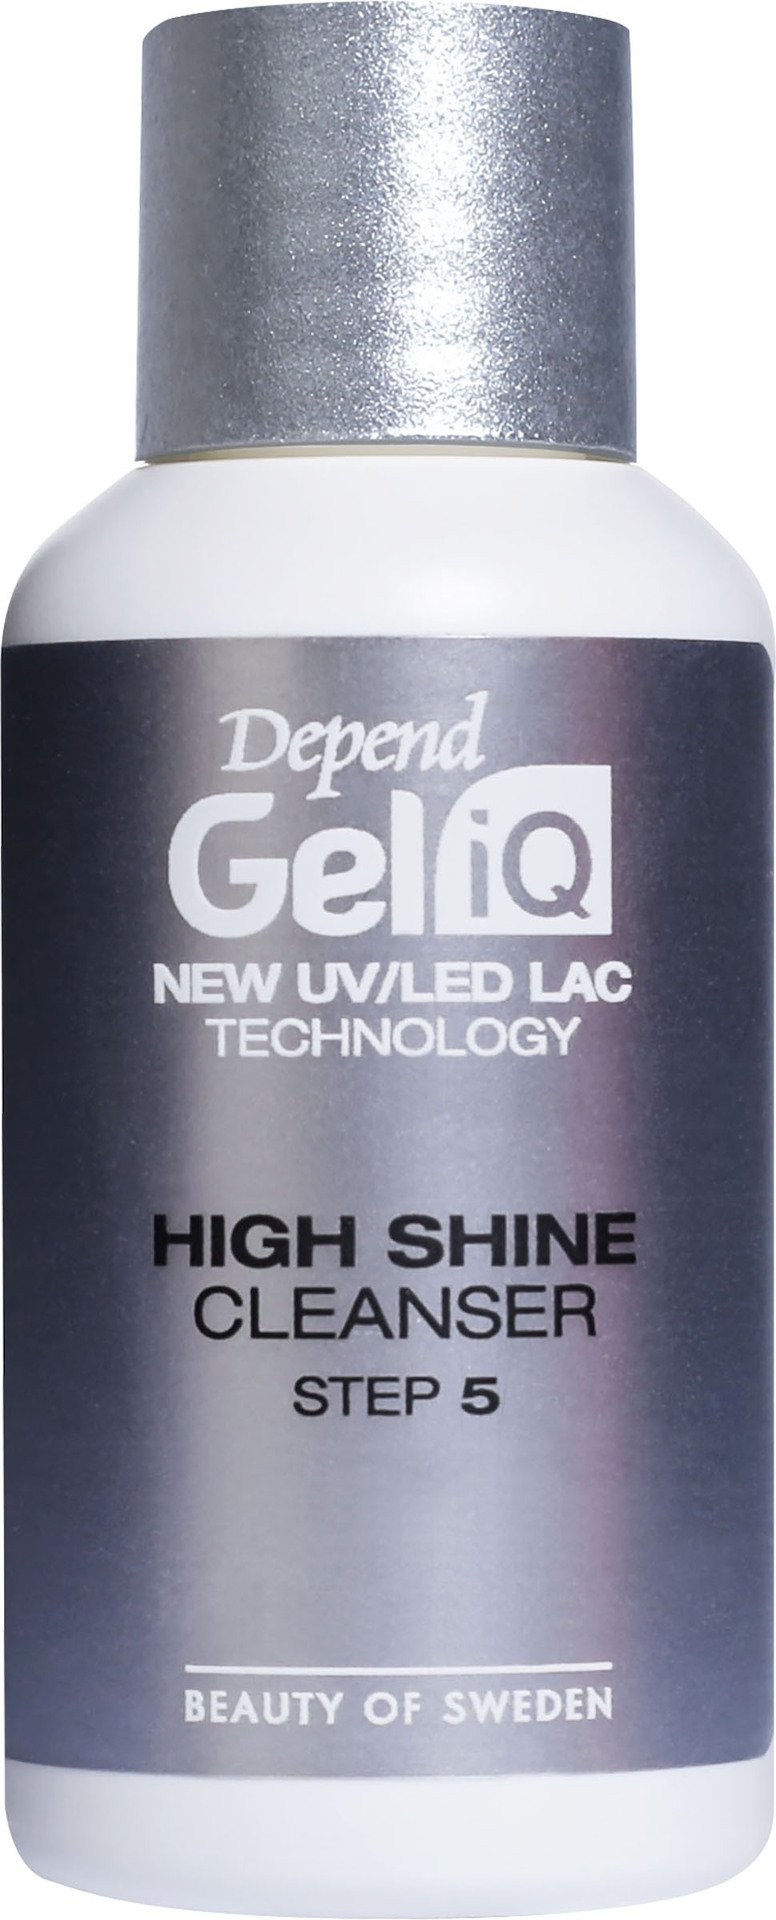 Depend Gel iQ High Shine Cleans Steg 5 35ml